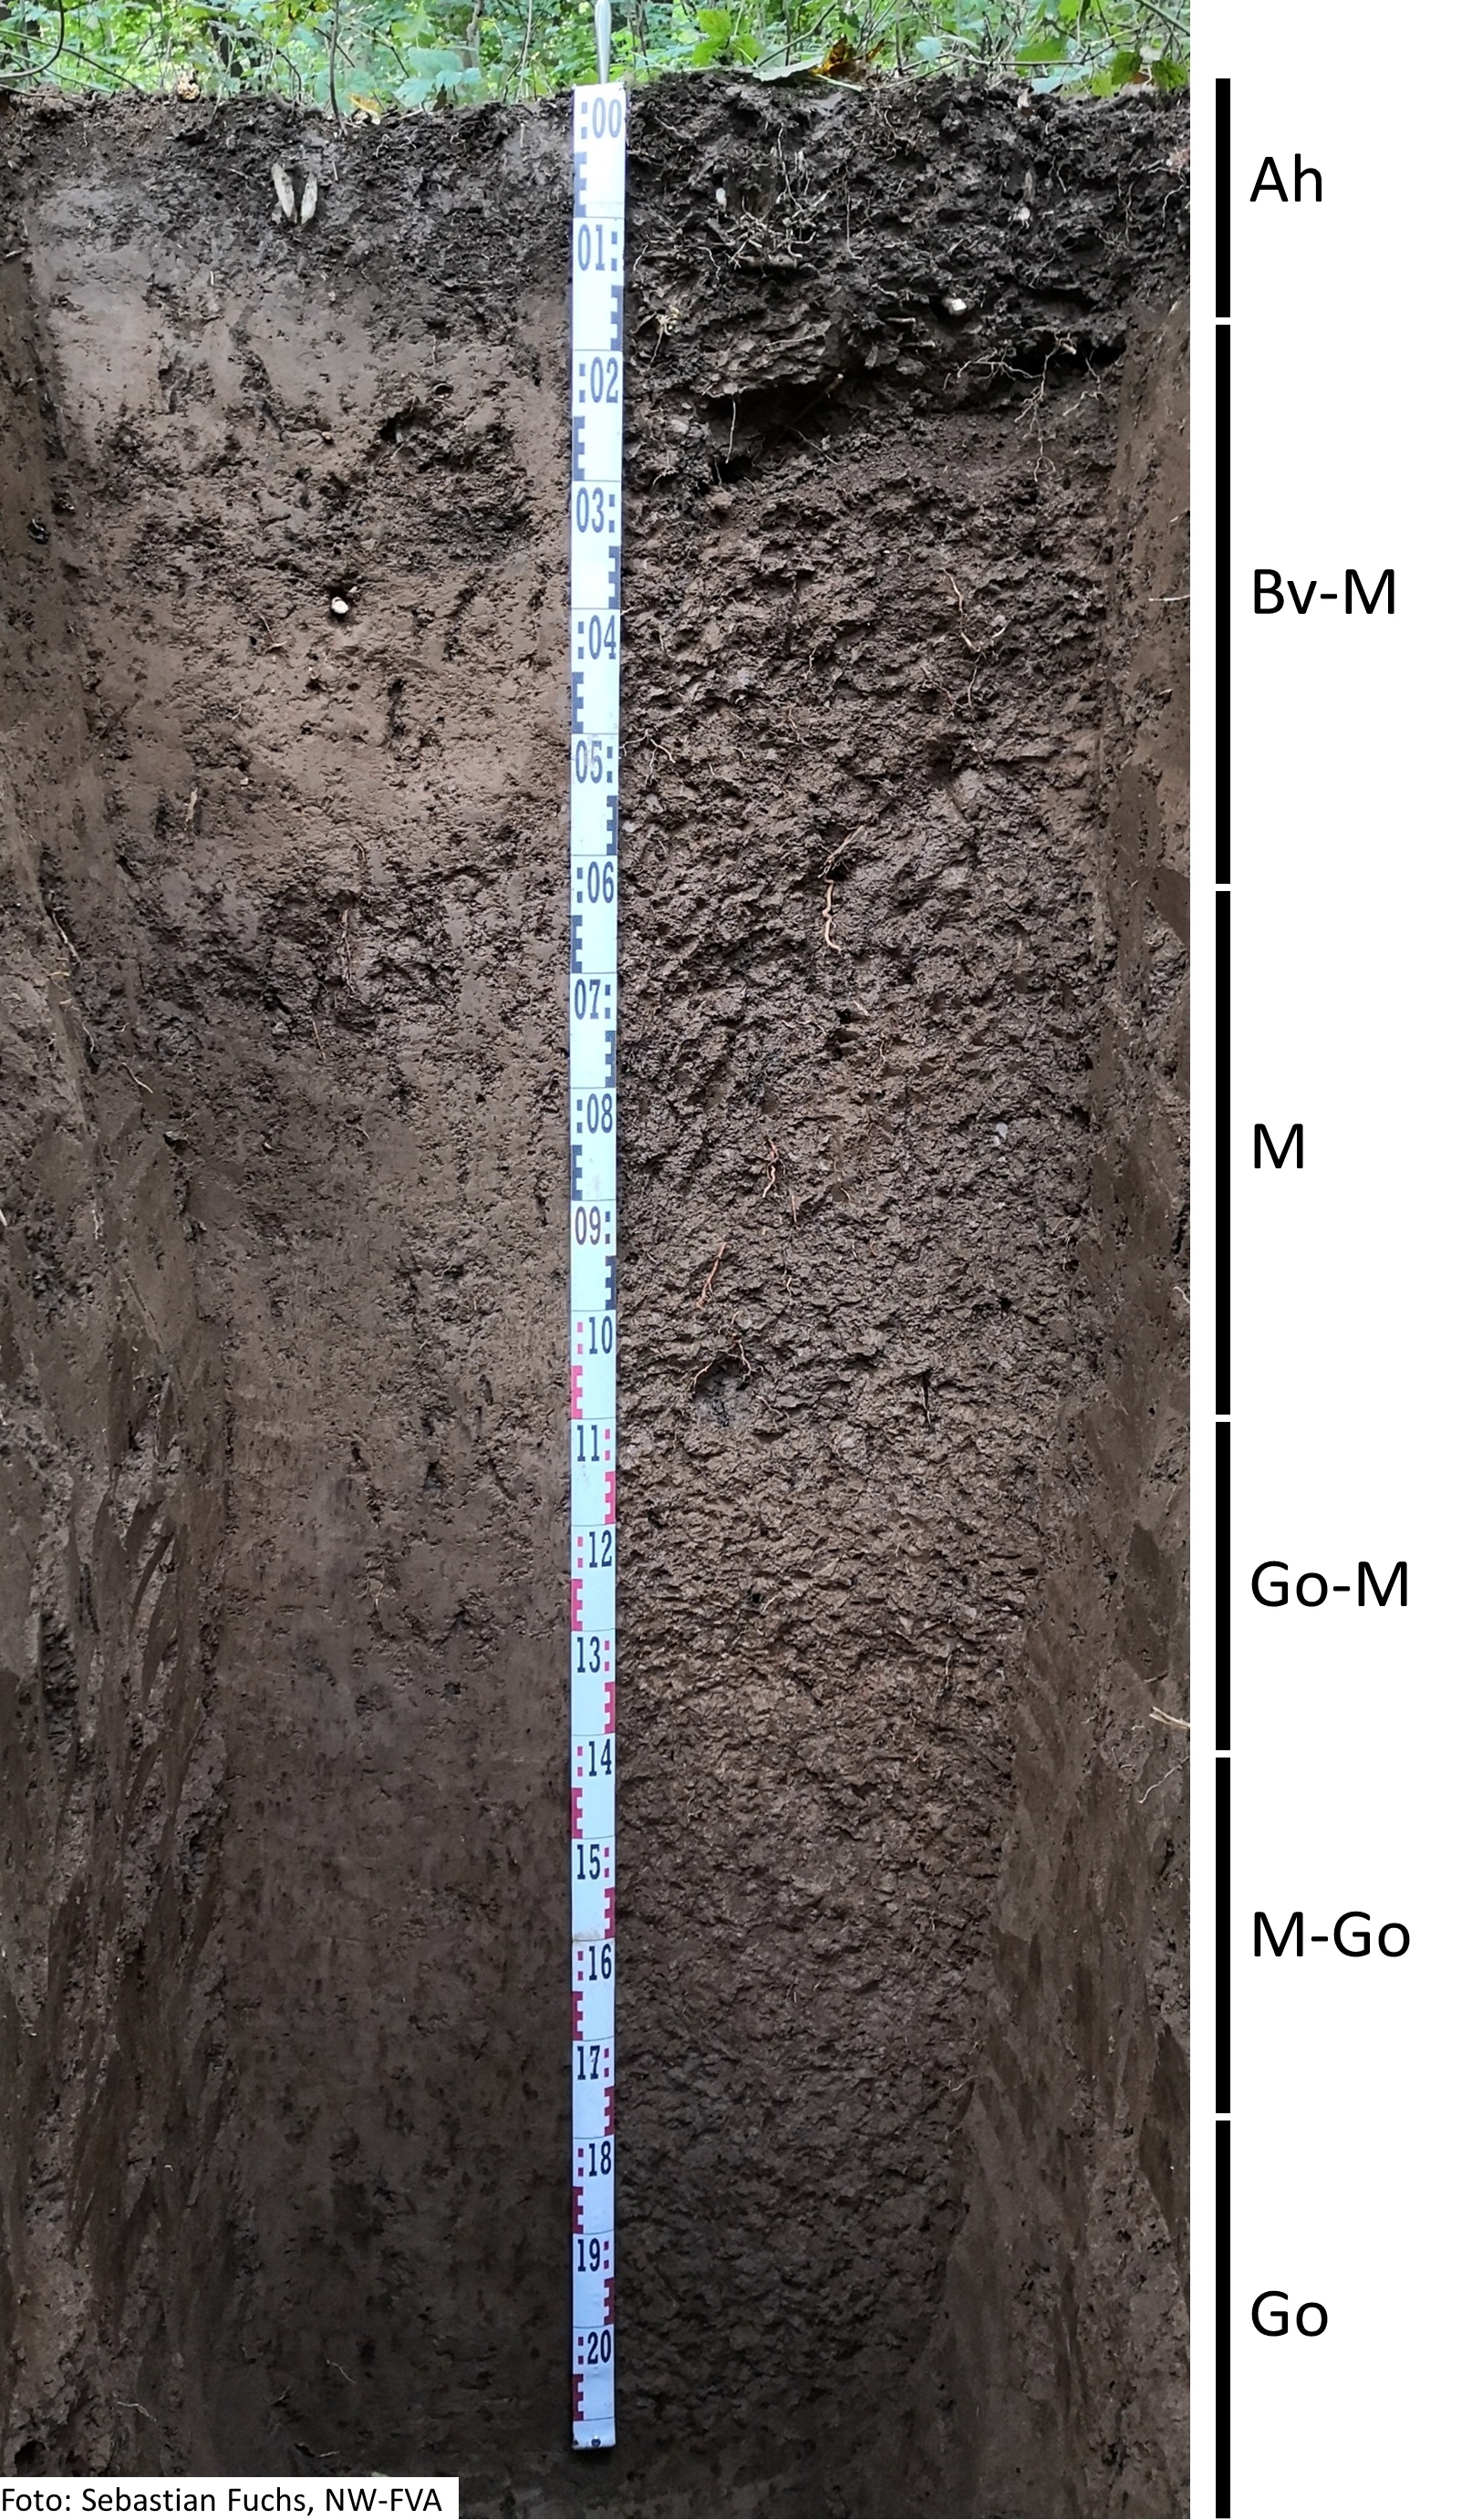 Das Foto zeigt einen senkrechten Schnitt durch den Boden der Untersuchungsfläche. Das Bodenprofil enthält folgende Bodenhorizonte: Ah, Bv-M, fM, Go-M, M-Go, Go